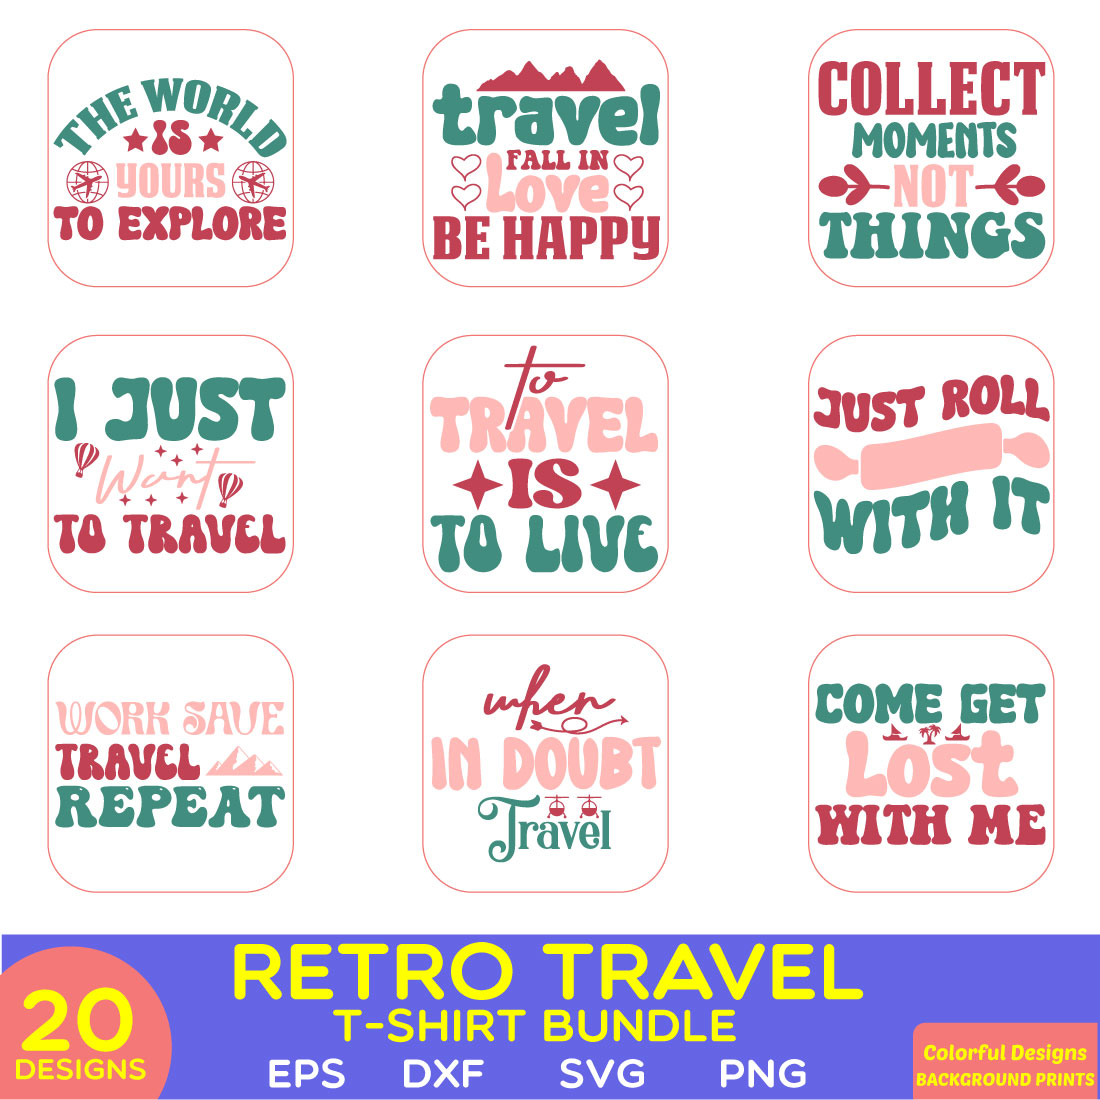 retro travel t-shirt bundle preview image.